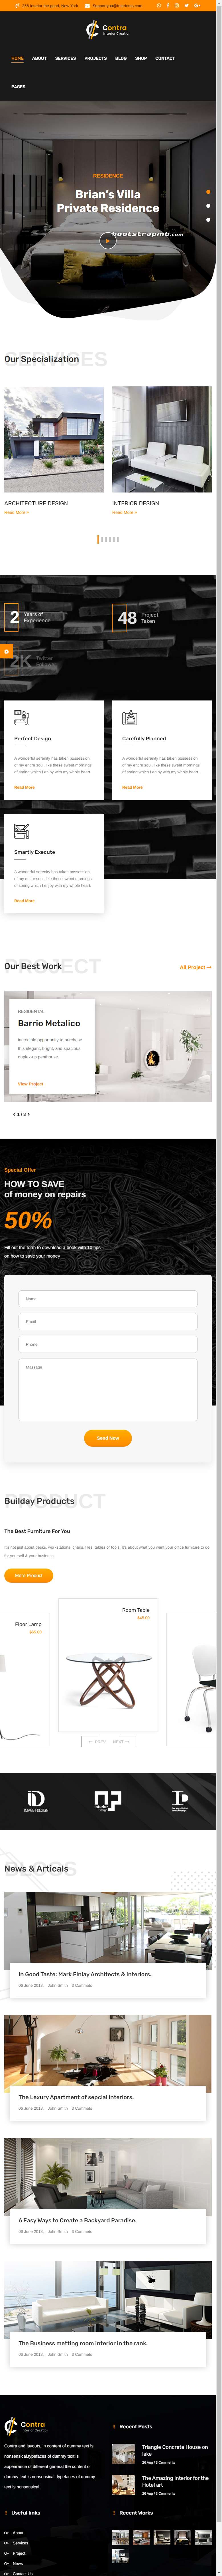 Bootstrap室内装饰设计公司网站模板